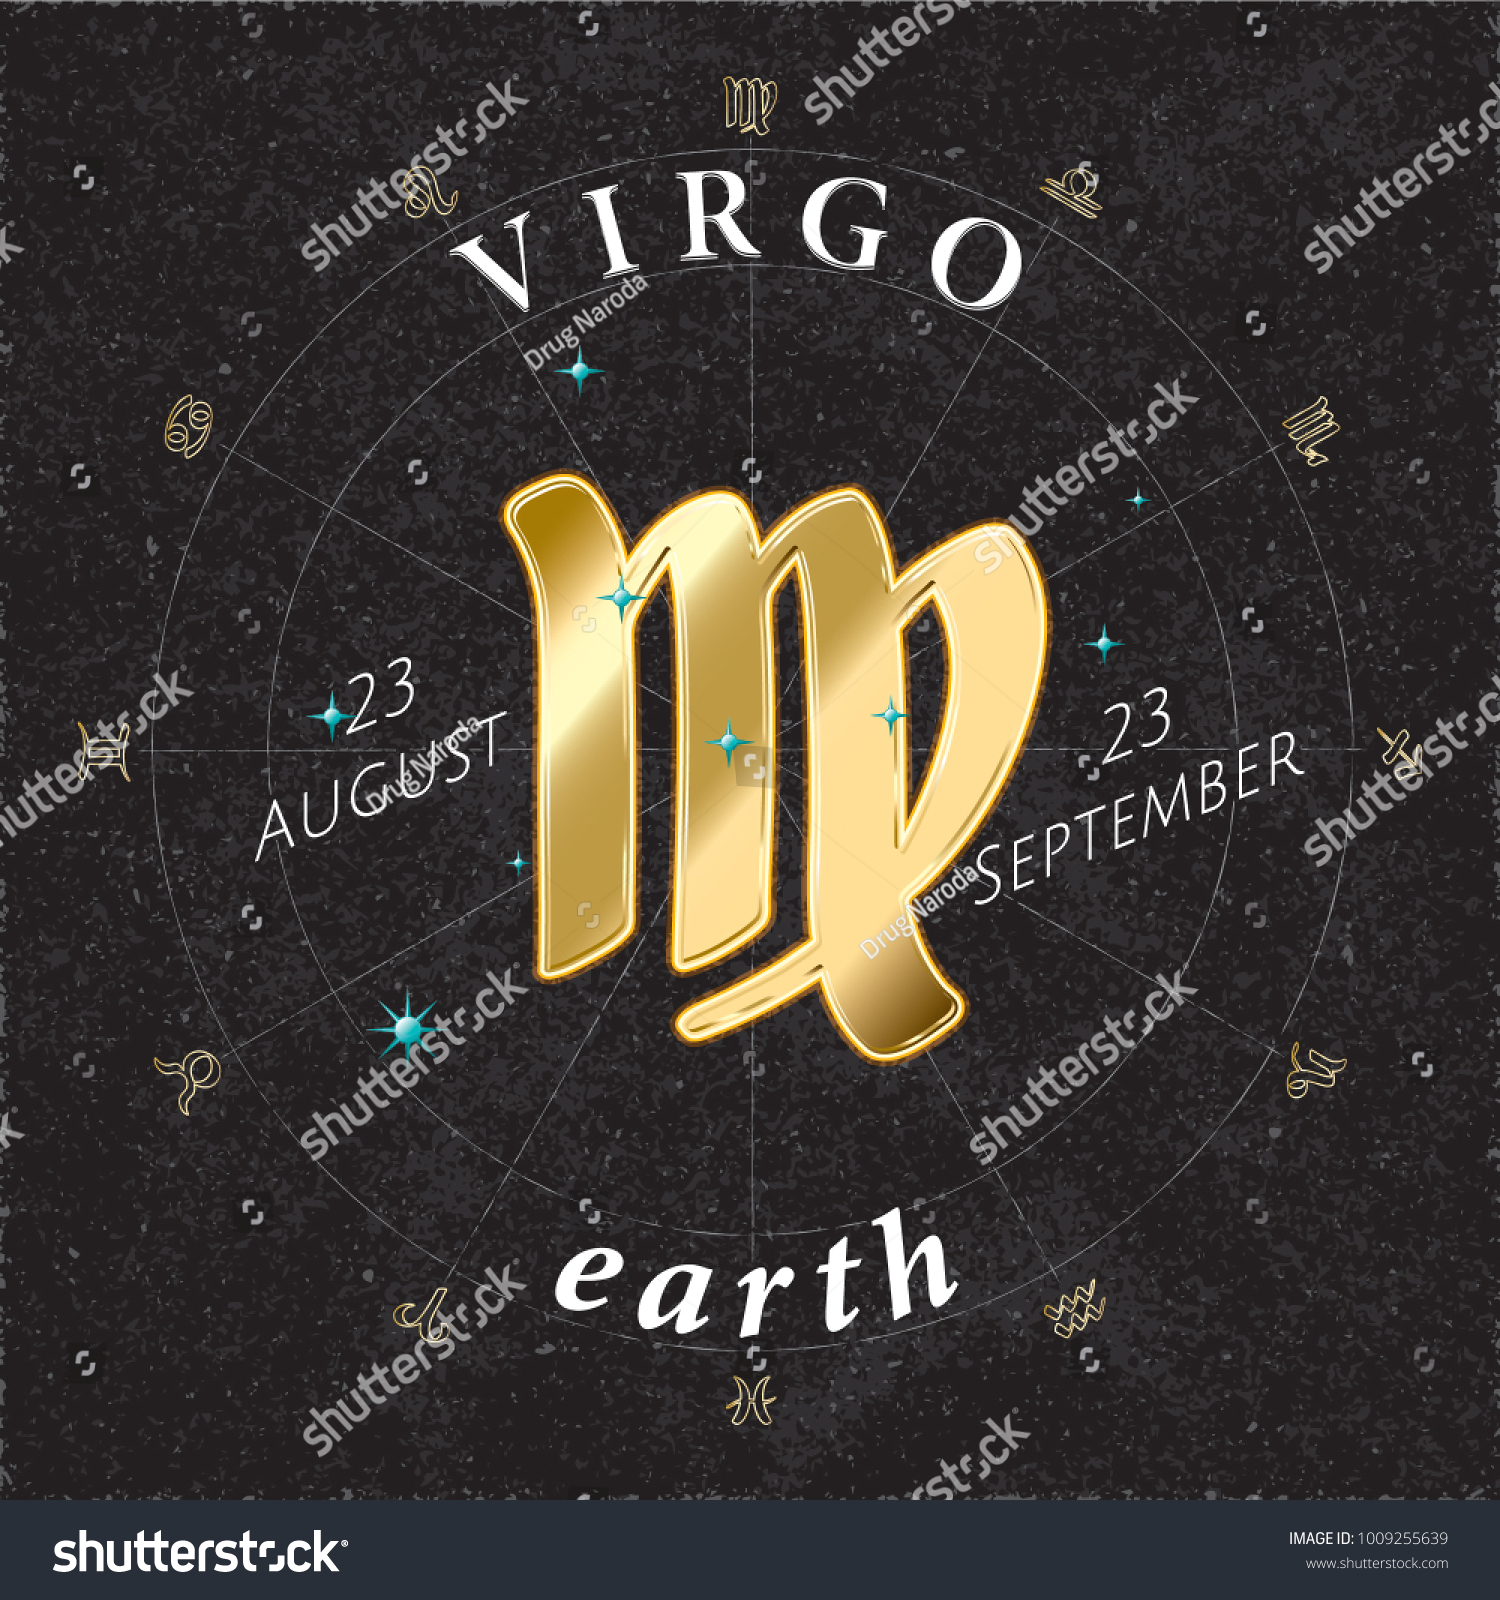 Dates virgo Leo Virgo